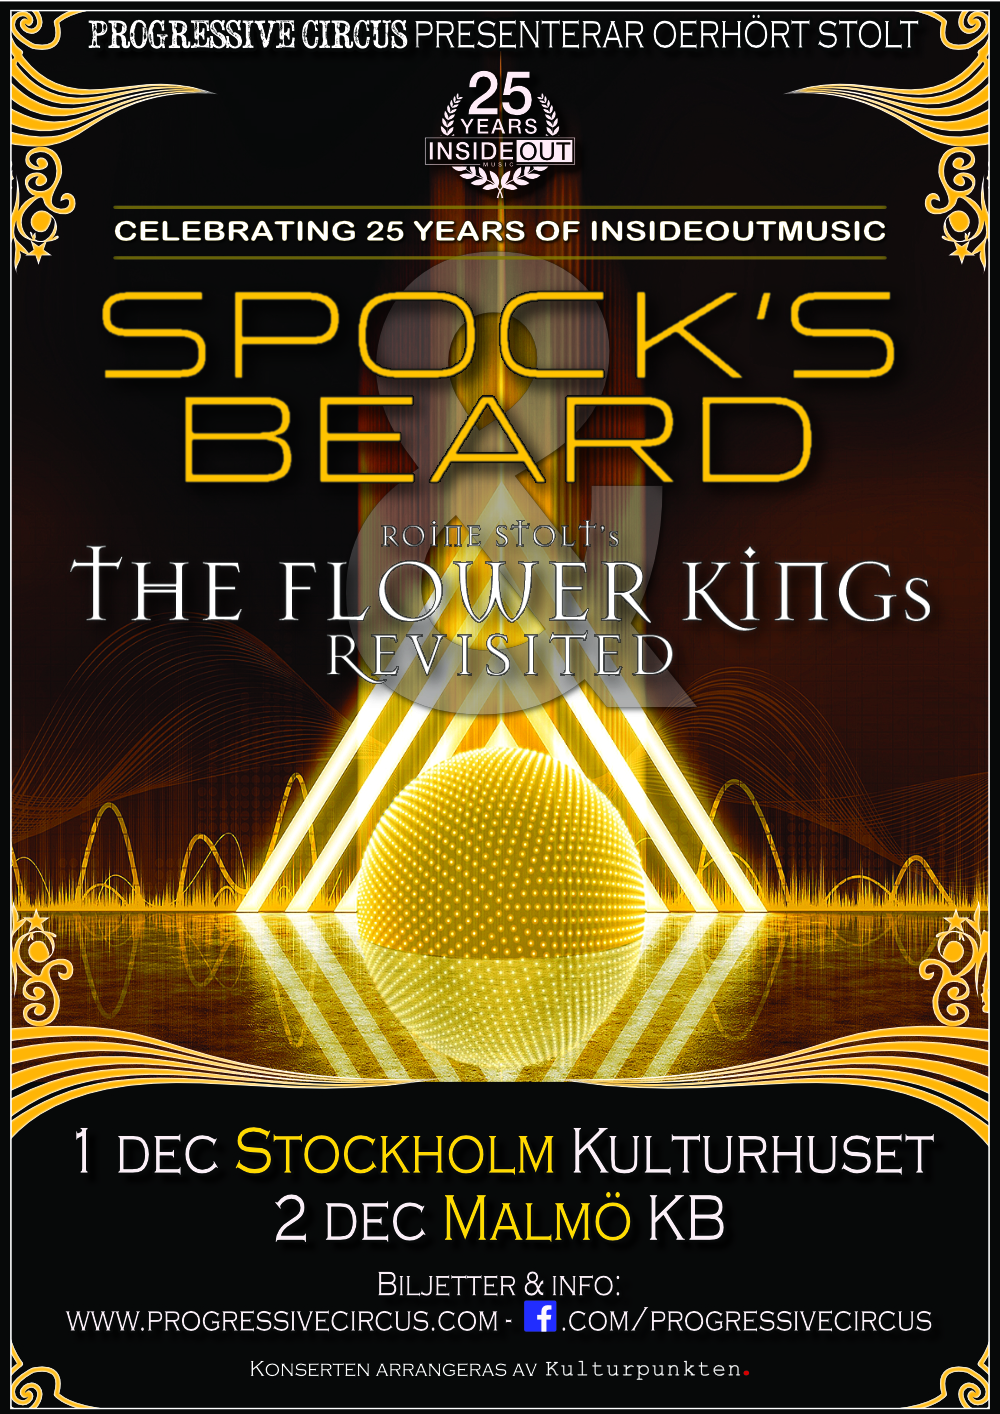 Spock's Beard & The Flower Kings Revisited